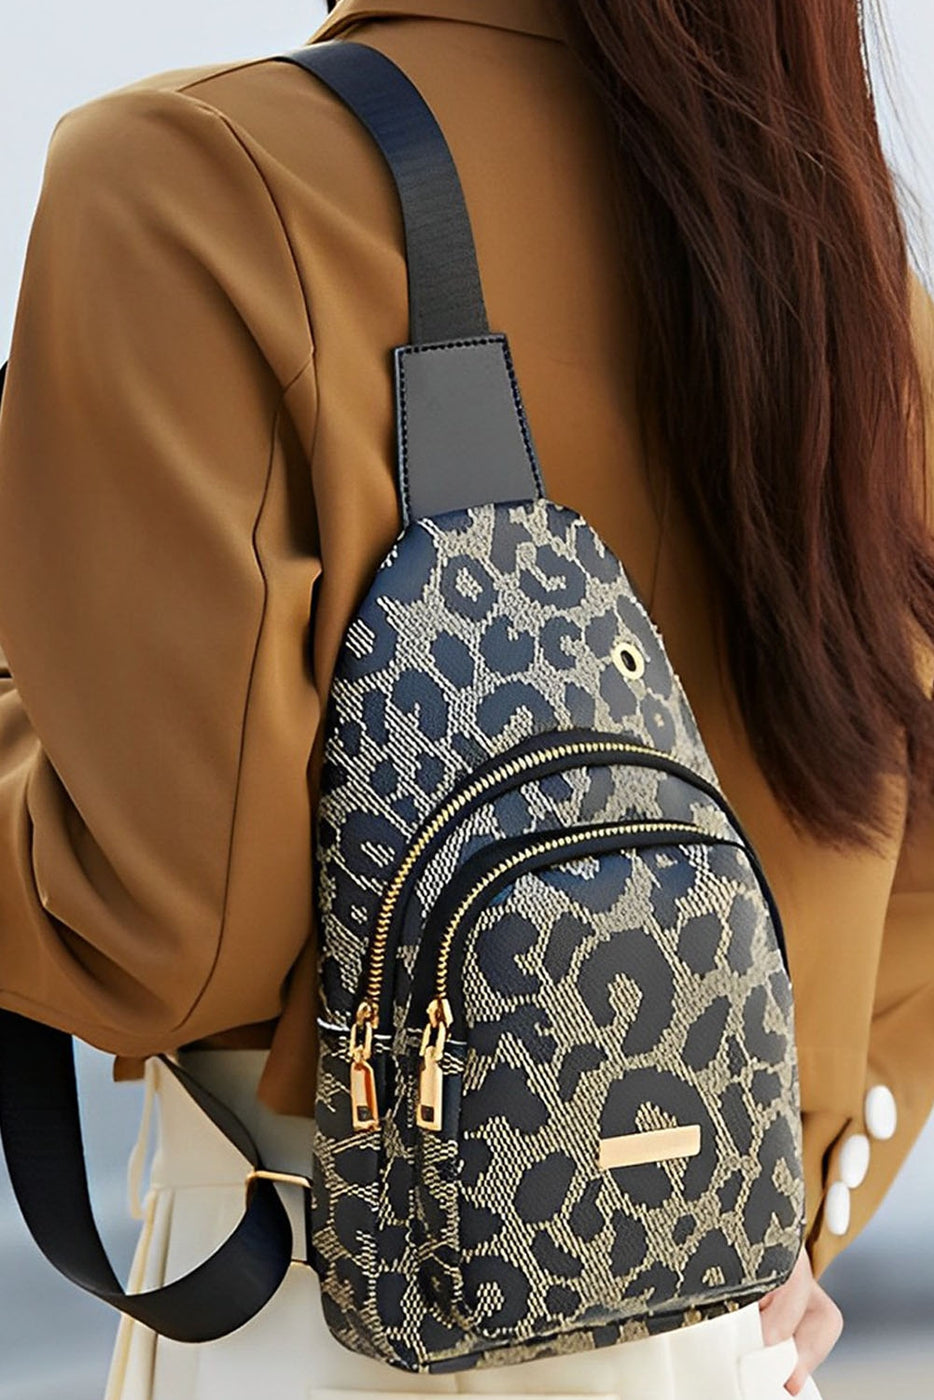 Pu Leopard Print Double Zipper Bag